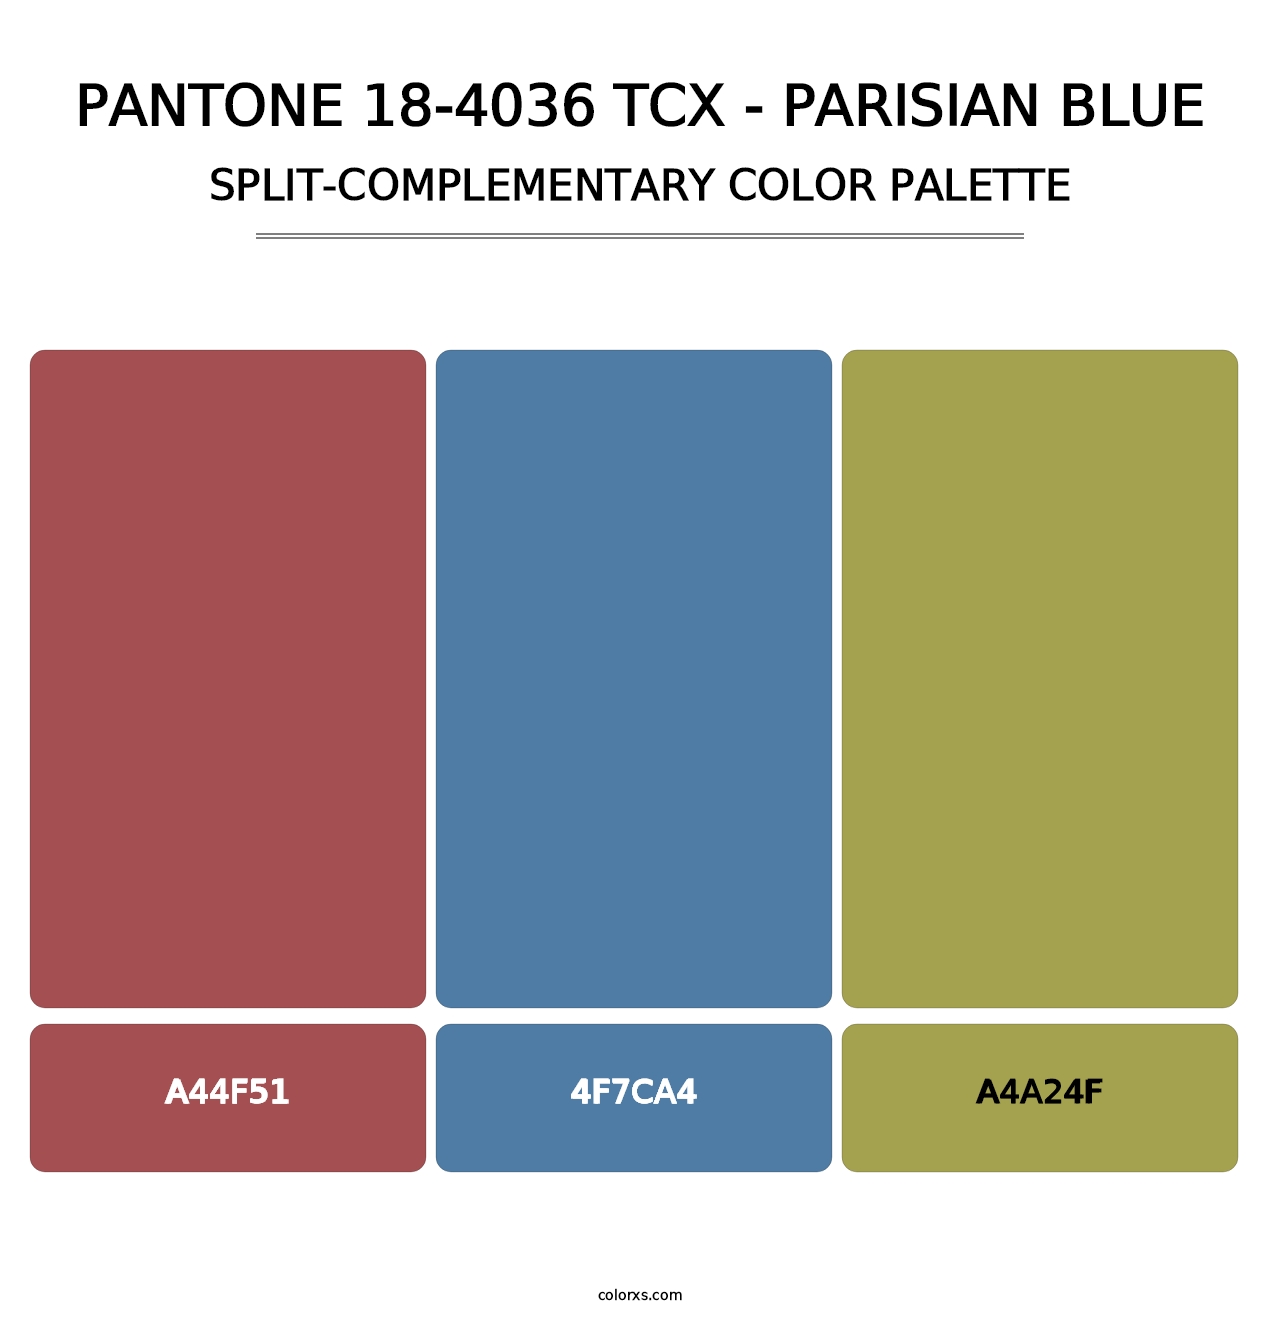 PANTONE 18-4036 TCX - Parisian Blue - Split-Complementary Color Palette